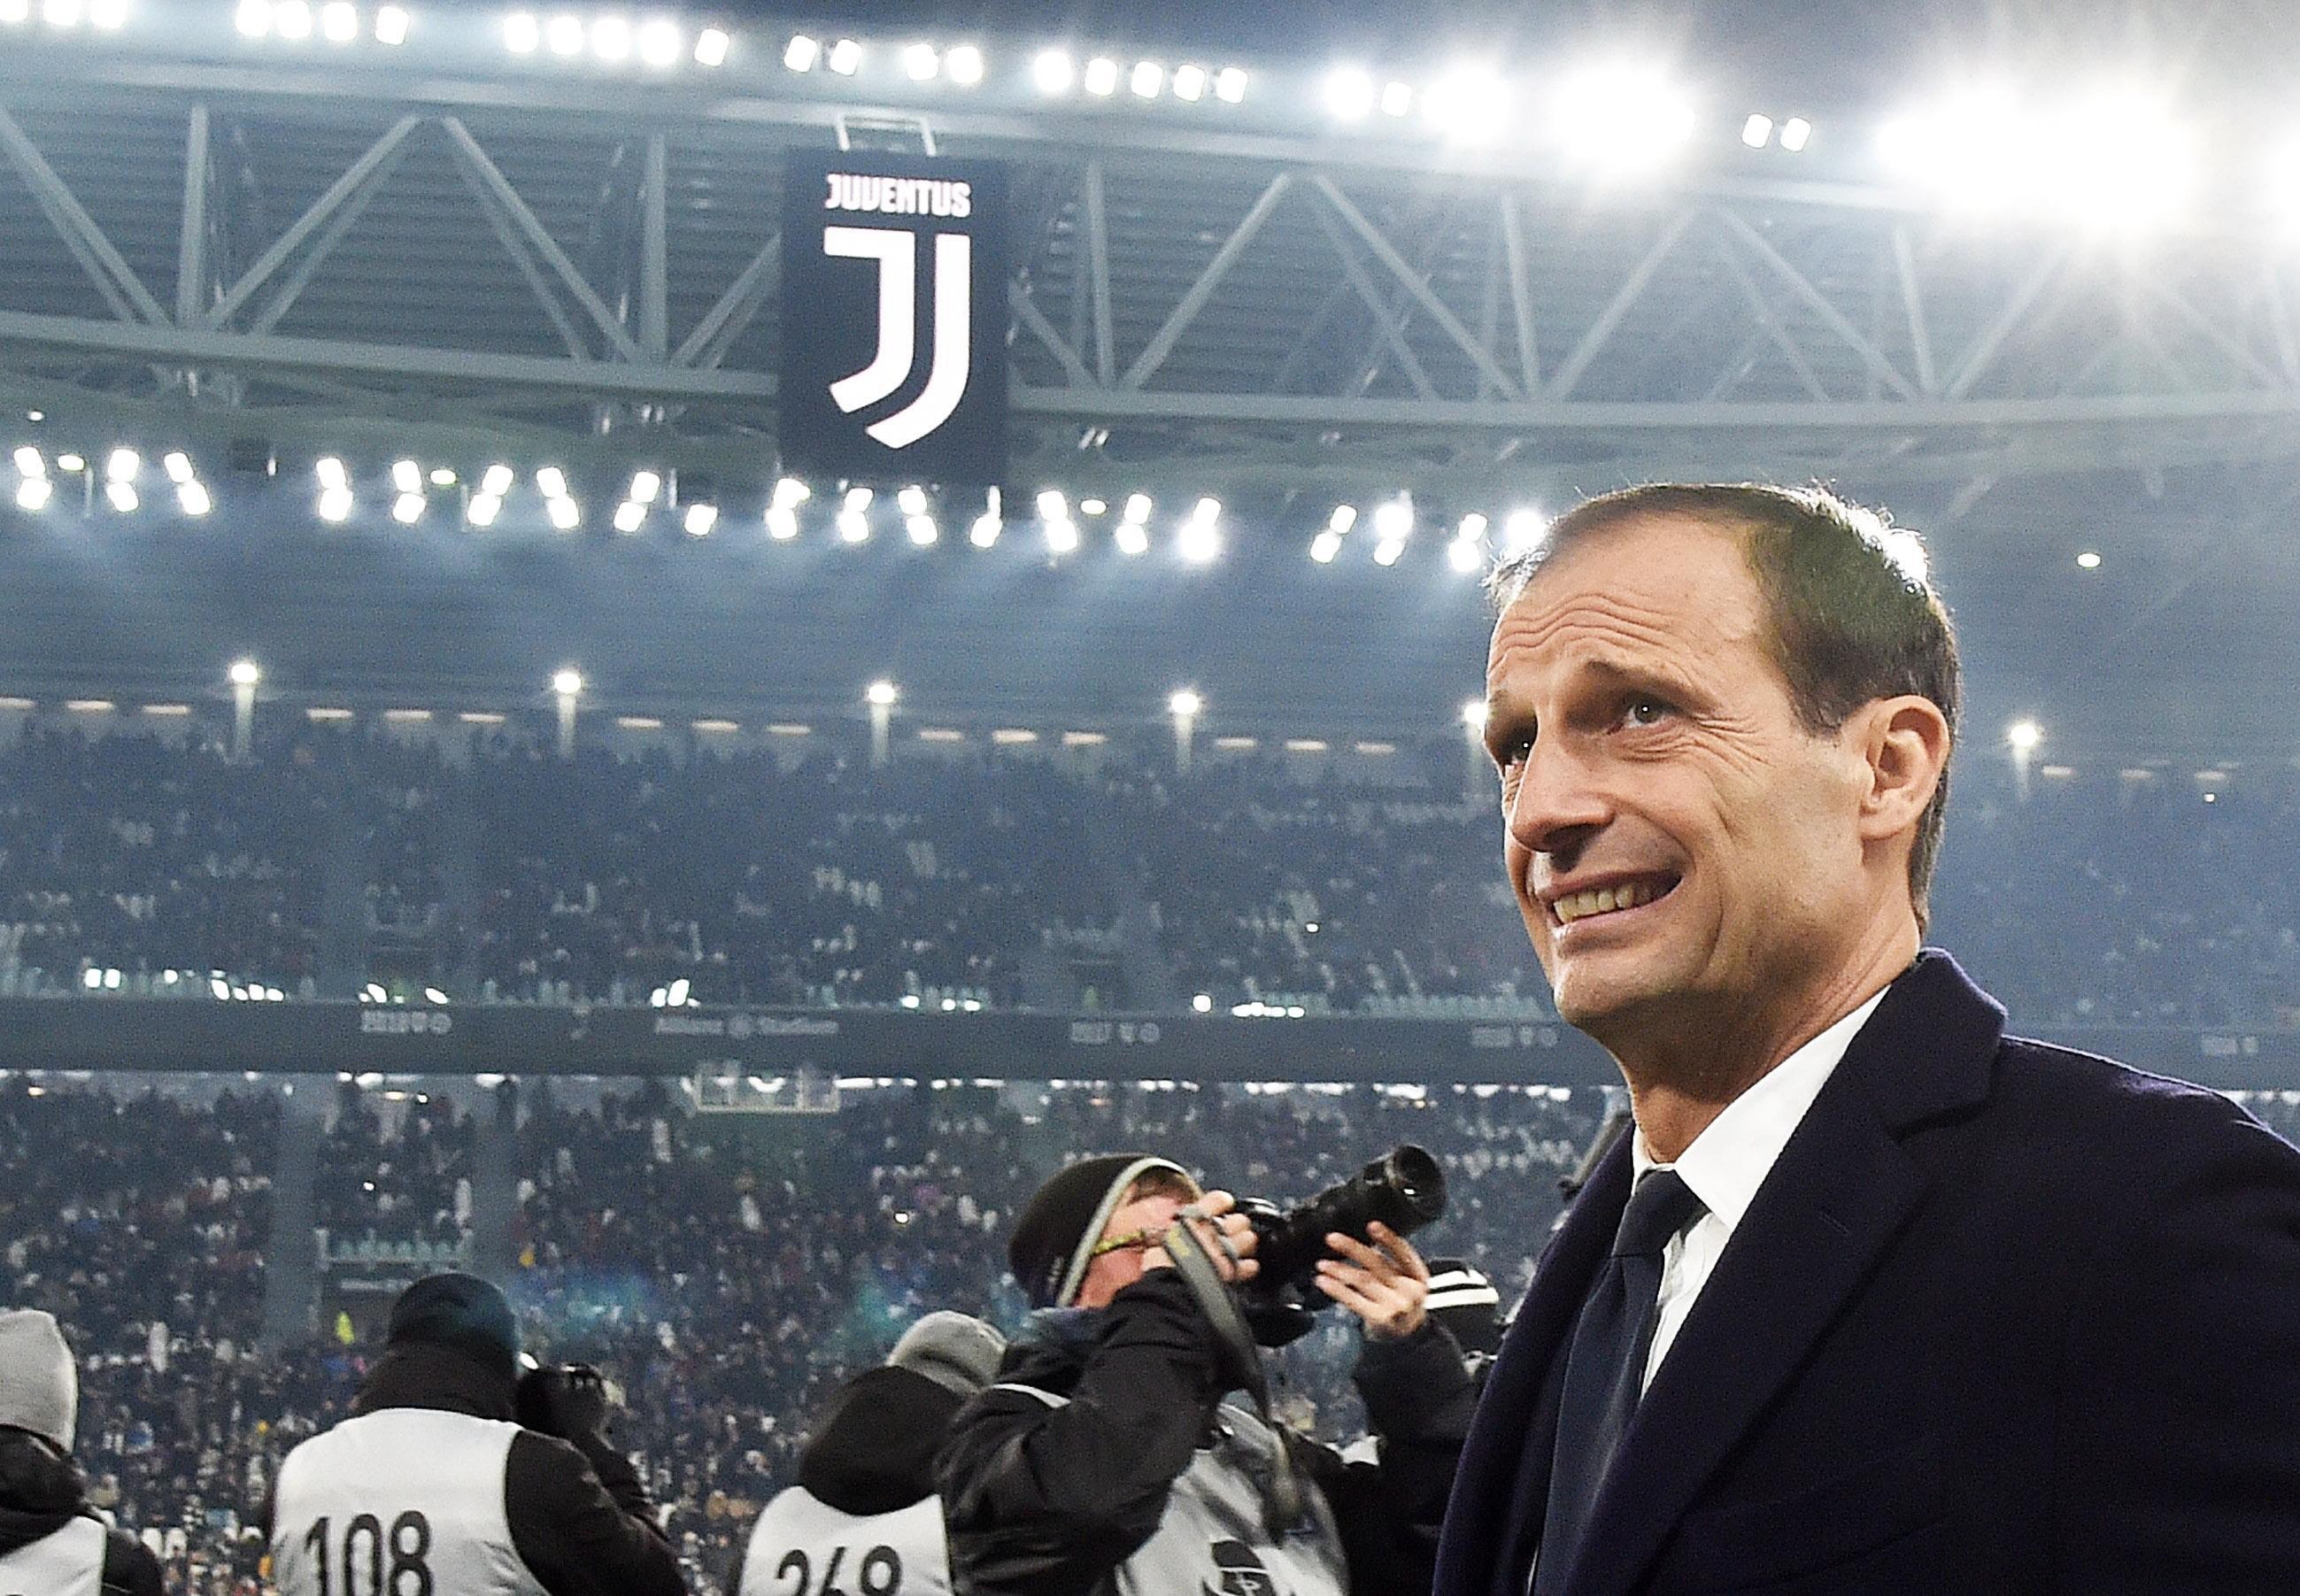 Allegri dejará su cargo de entrenador del Juventus de Turín al final de la presente temporada de la Serie A italiana. (Foto Prensa Libre: AFP)